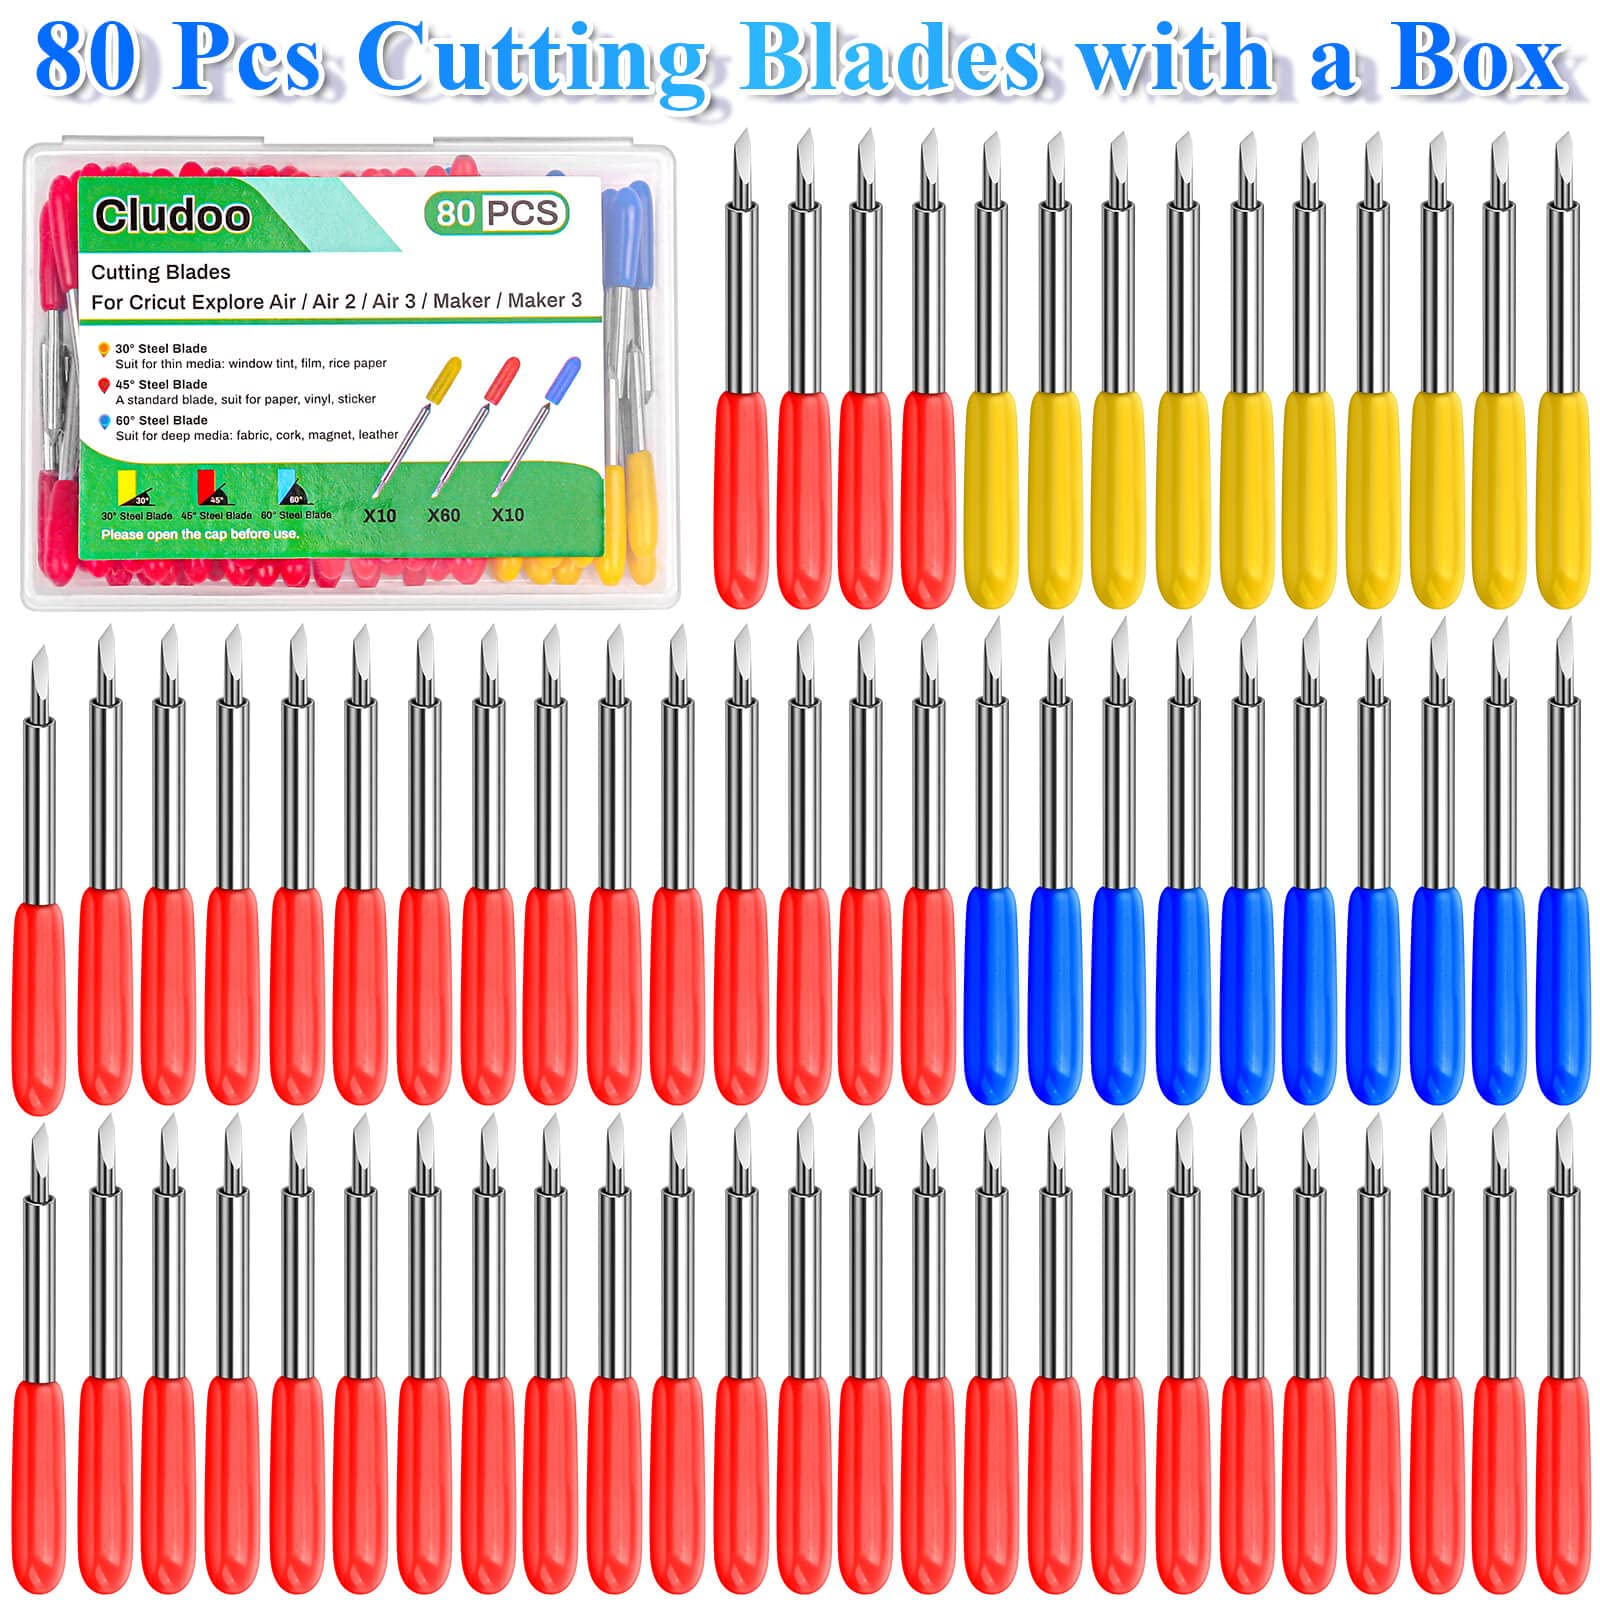 50PCS Fine Point Blades, Cutting Blades for Cricut Maker 3/ Explore Air 2/ Air